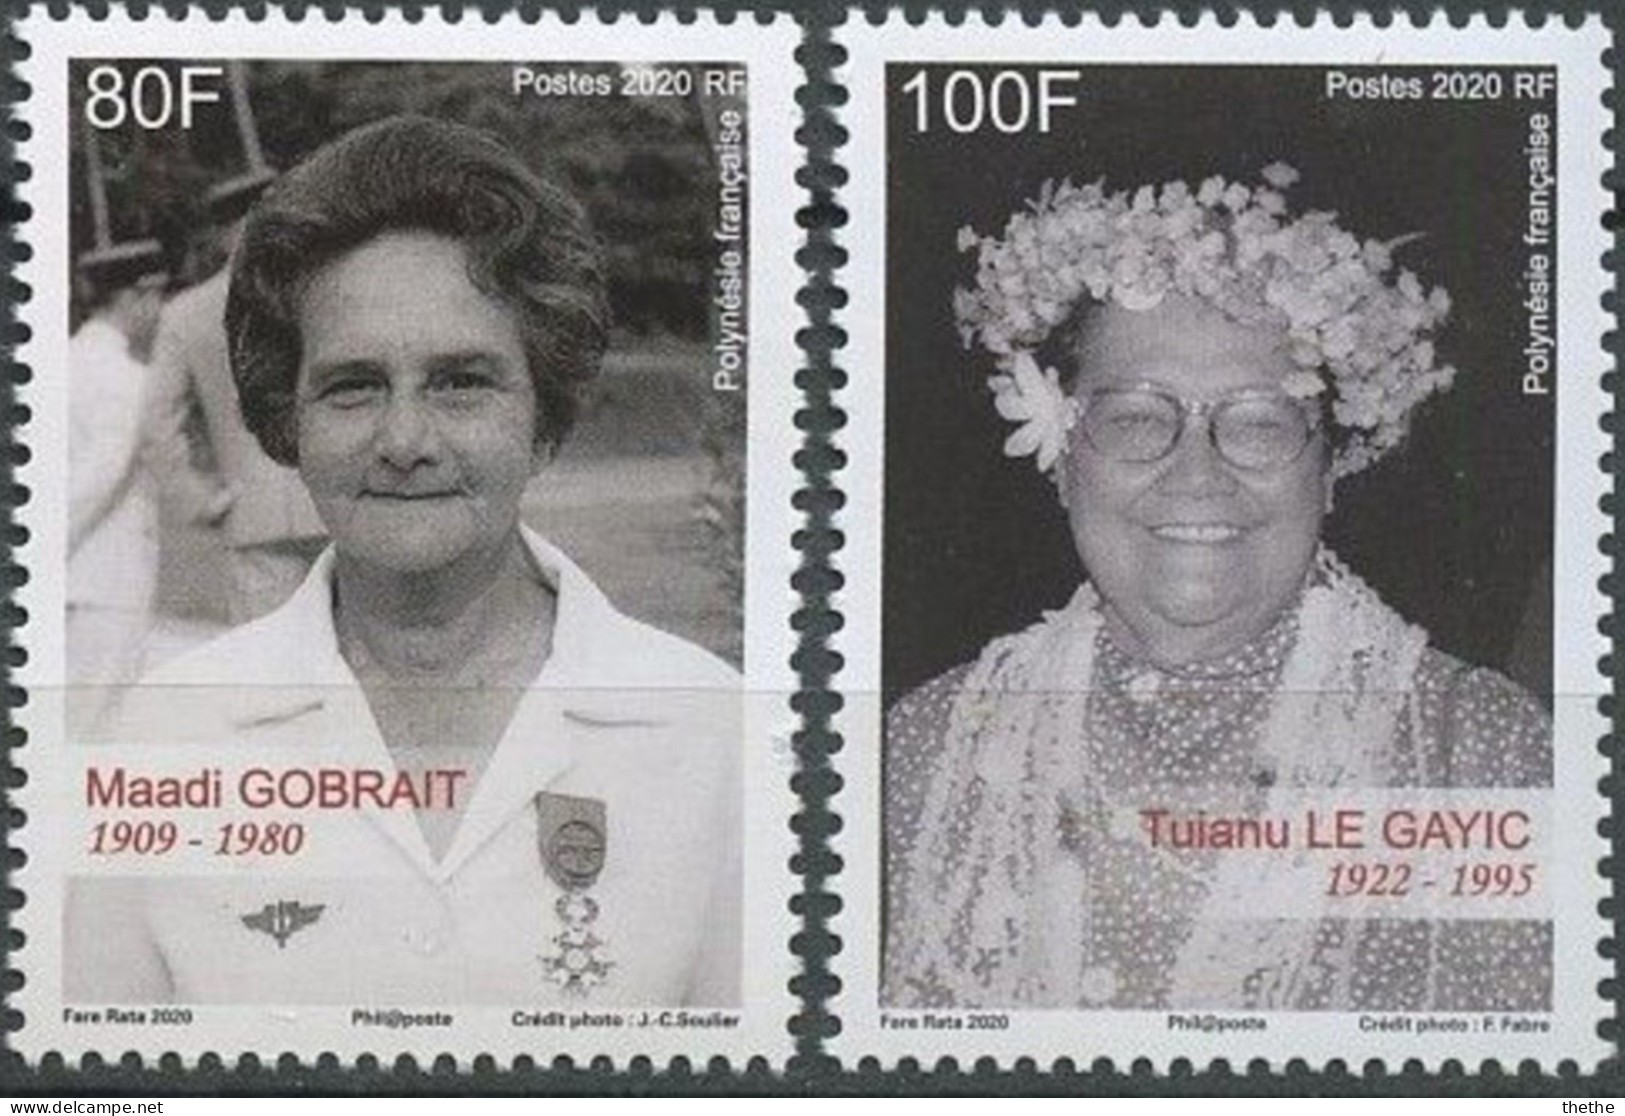 POLYNESIE - Maadi Gobrait (1909-1980), Infirmière Et Militante Politique - Tuianu Le Gayic(1922-1995), Militante Pour Le - Neufs